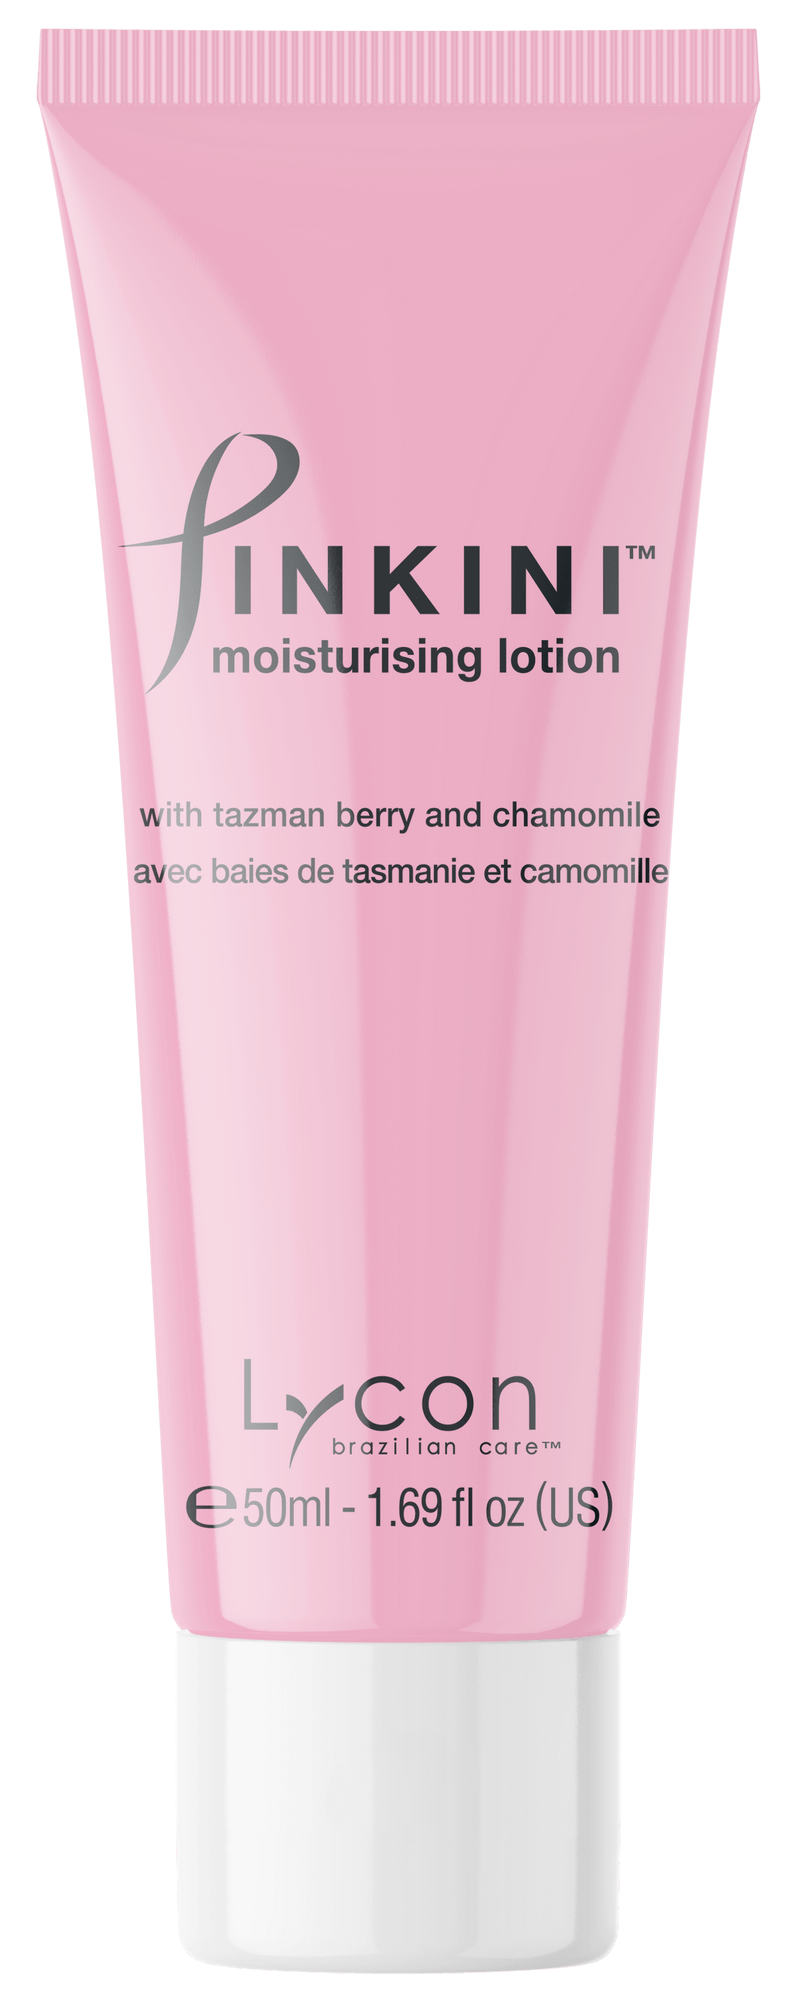 Pinkini moisturising lotion 50 ml